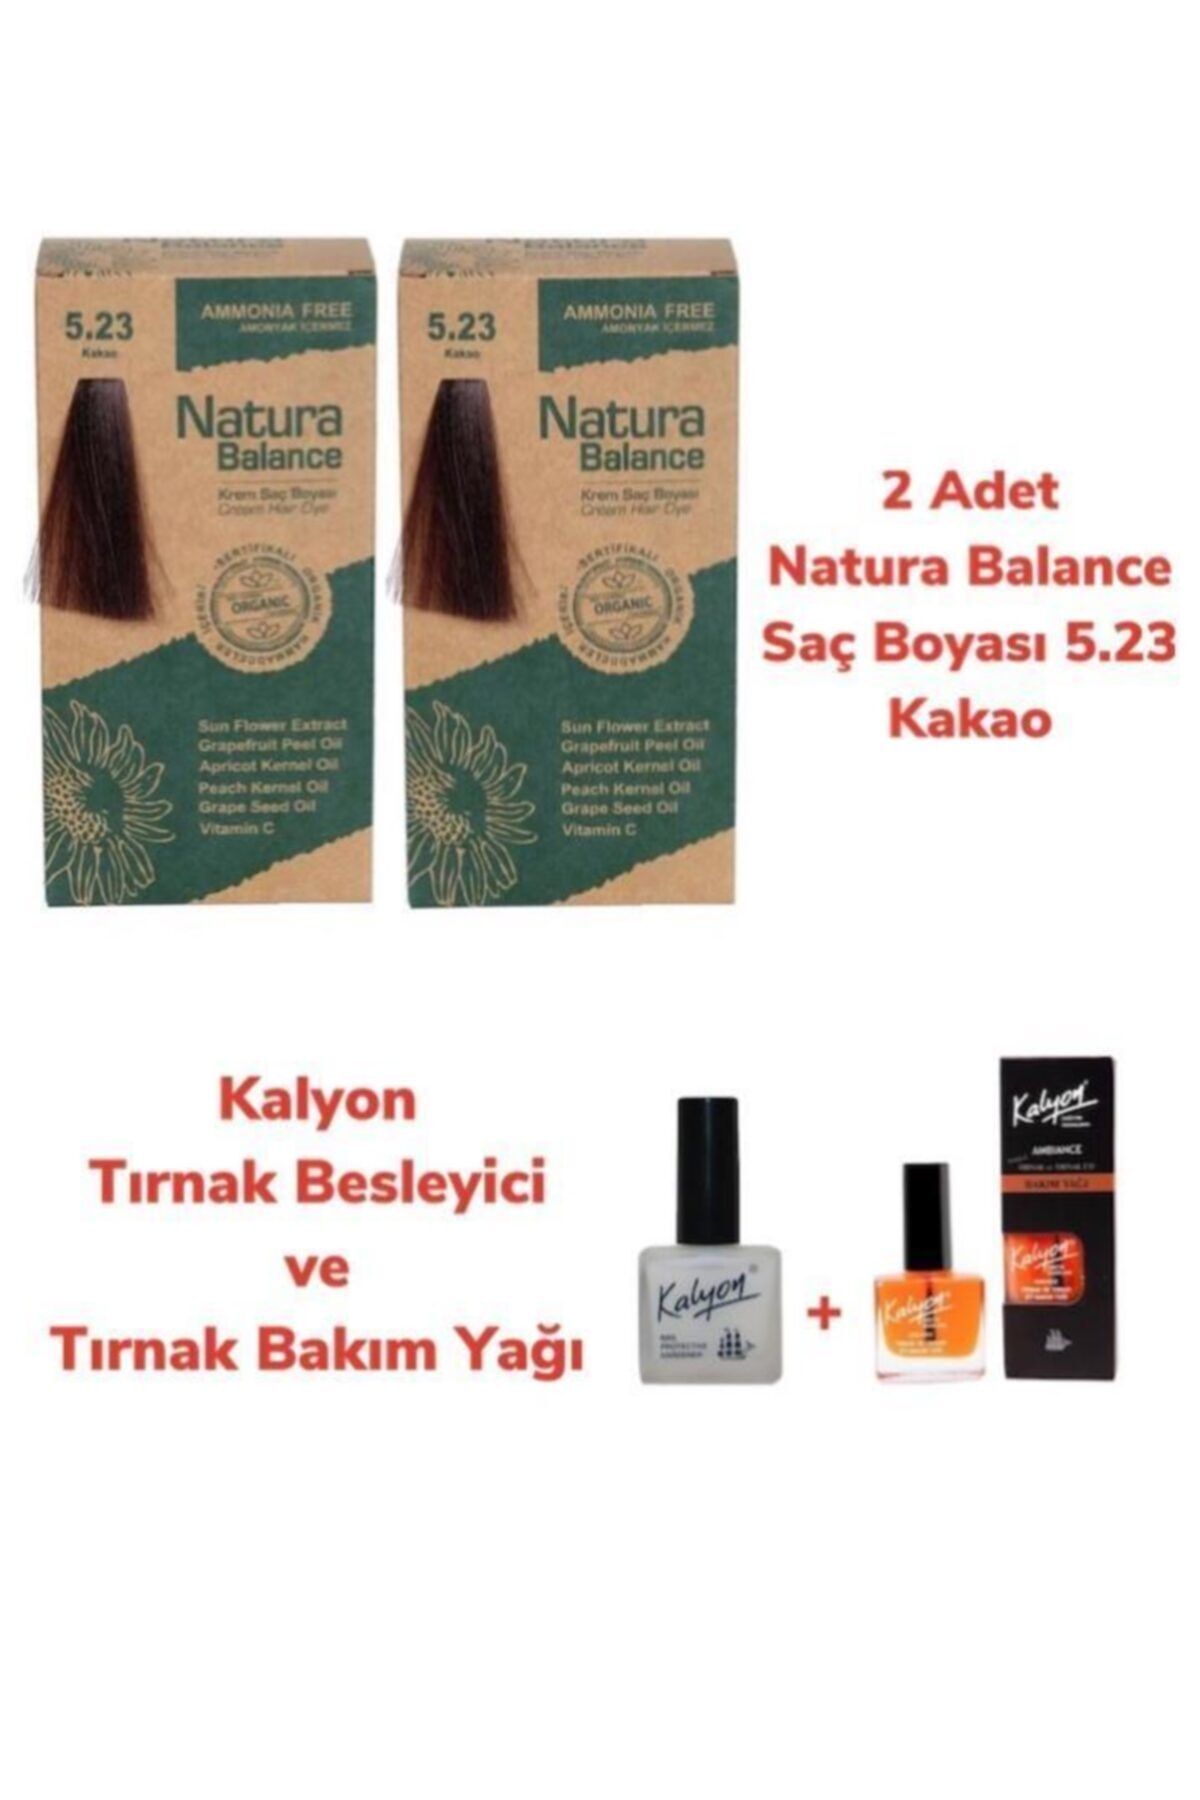 NATURABALANCE Balance Saç Boyası 5.23 Kakao 2 Adet + Kalyon Tırnak Besleyici Ve Bakım Yağı